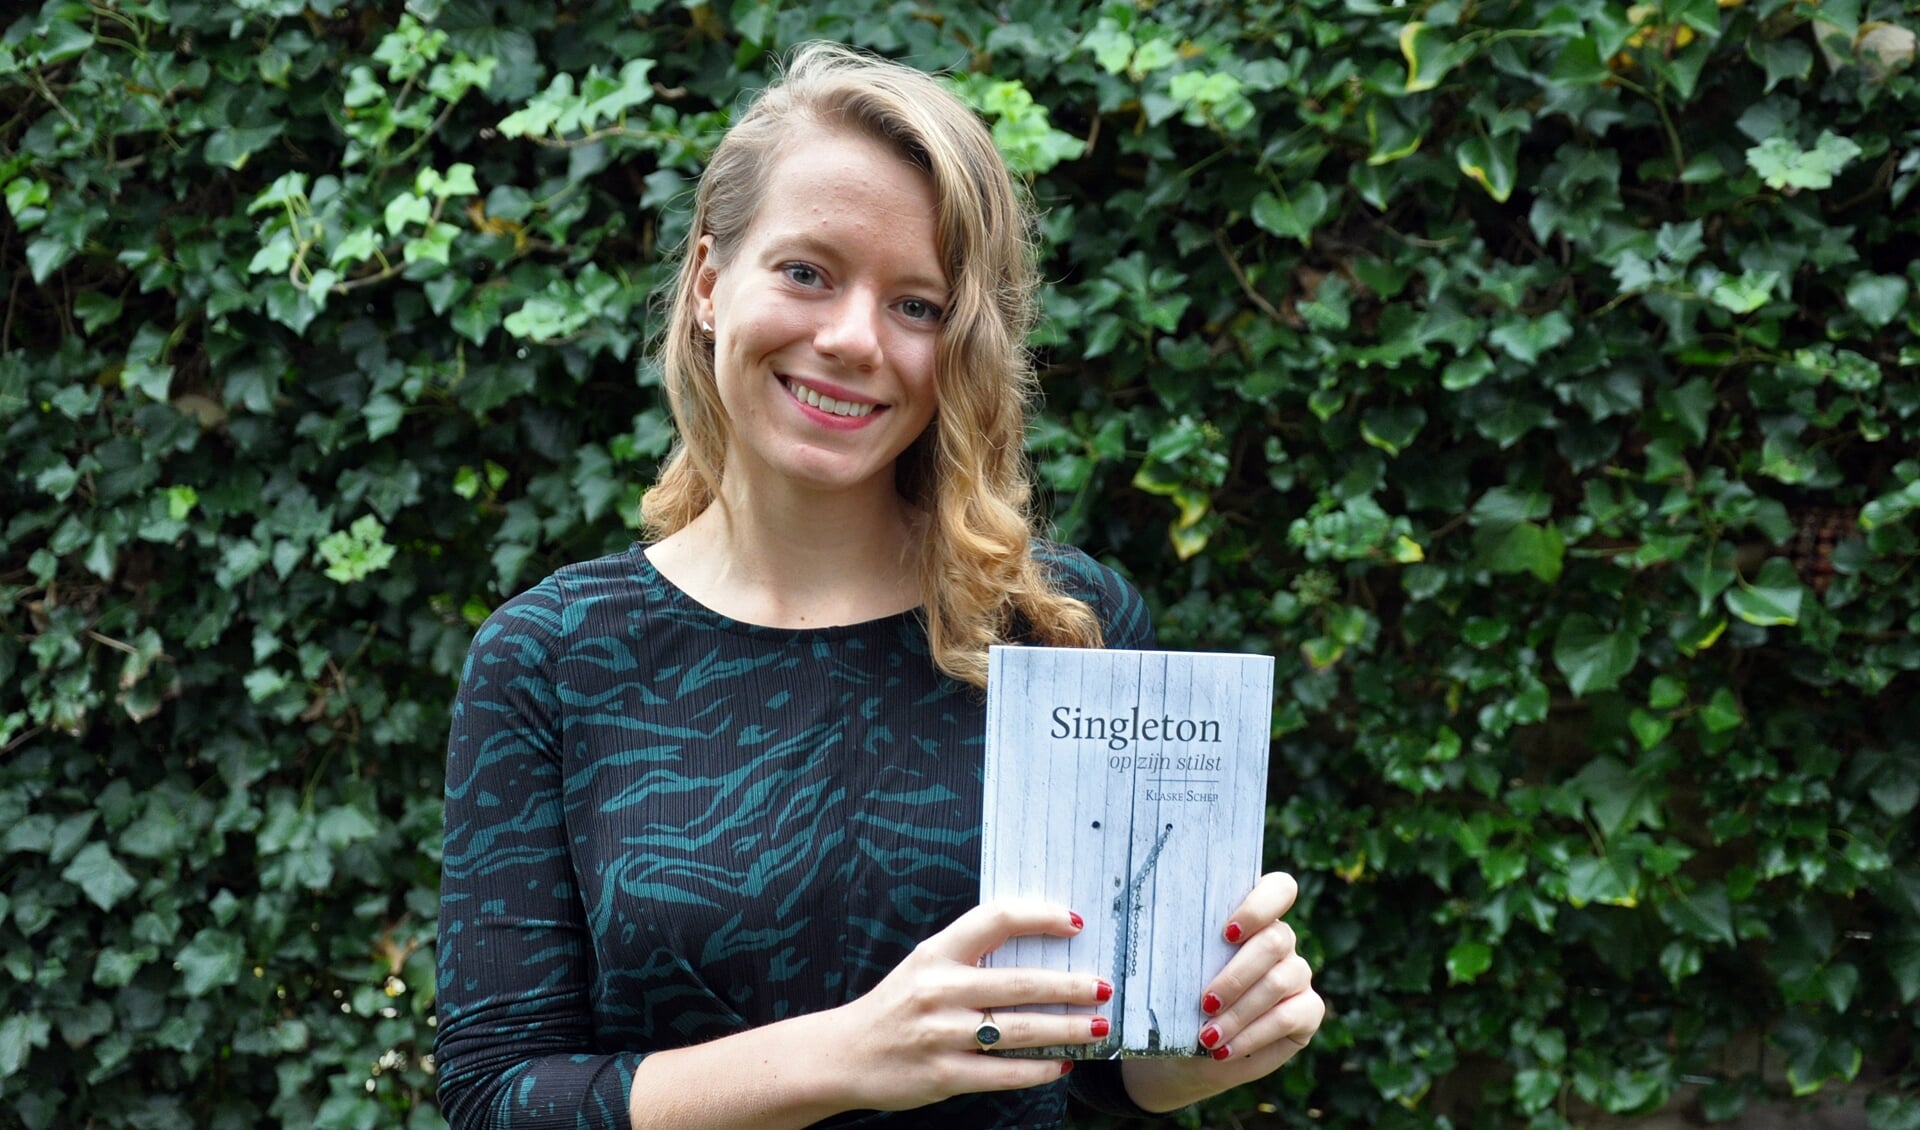 Klaske Schep met haar debuutroman 'Singleton op zijn stilst'.